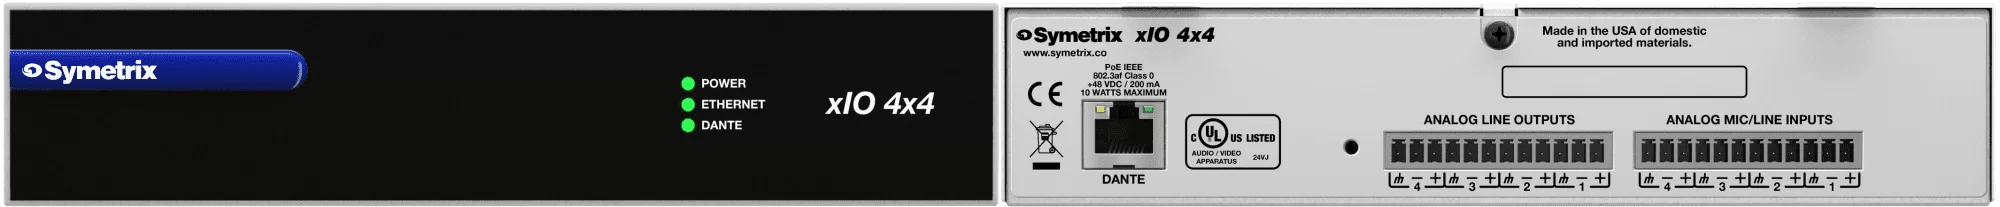 symetrix-xIO-4x4_1200px|symetrix-xIO-4x4_1200px